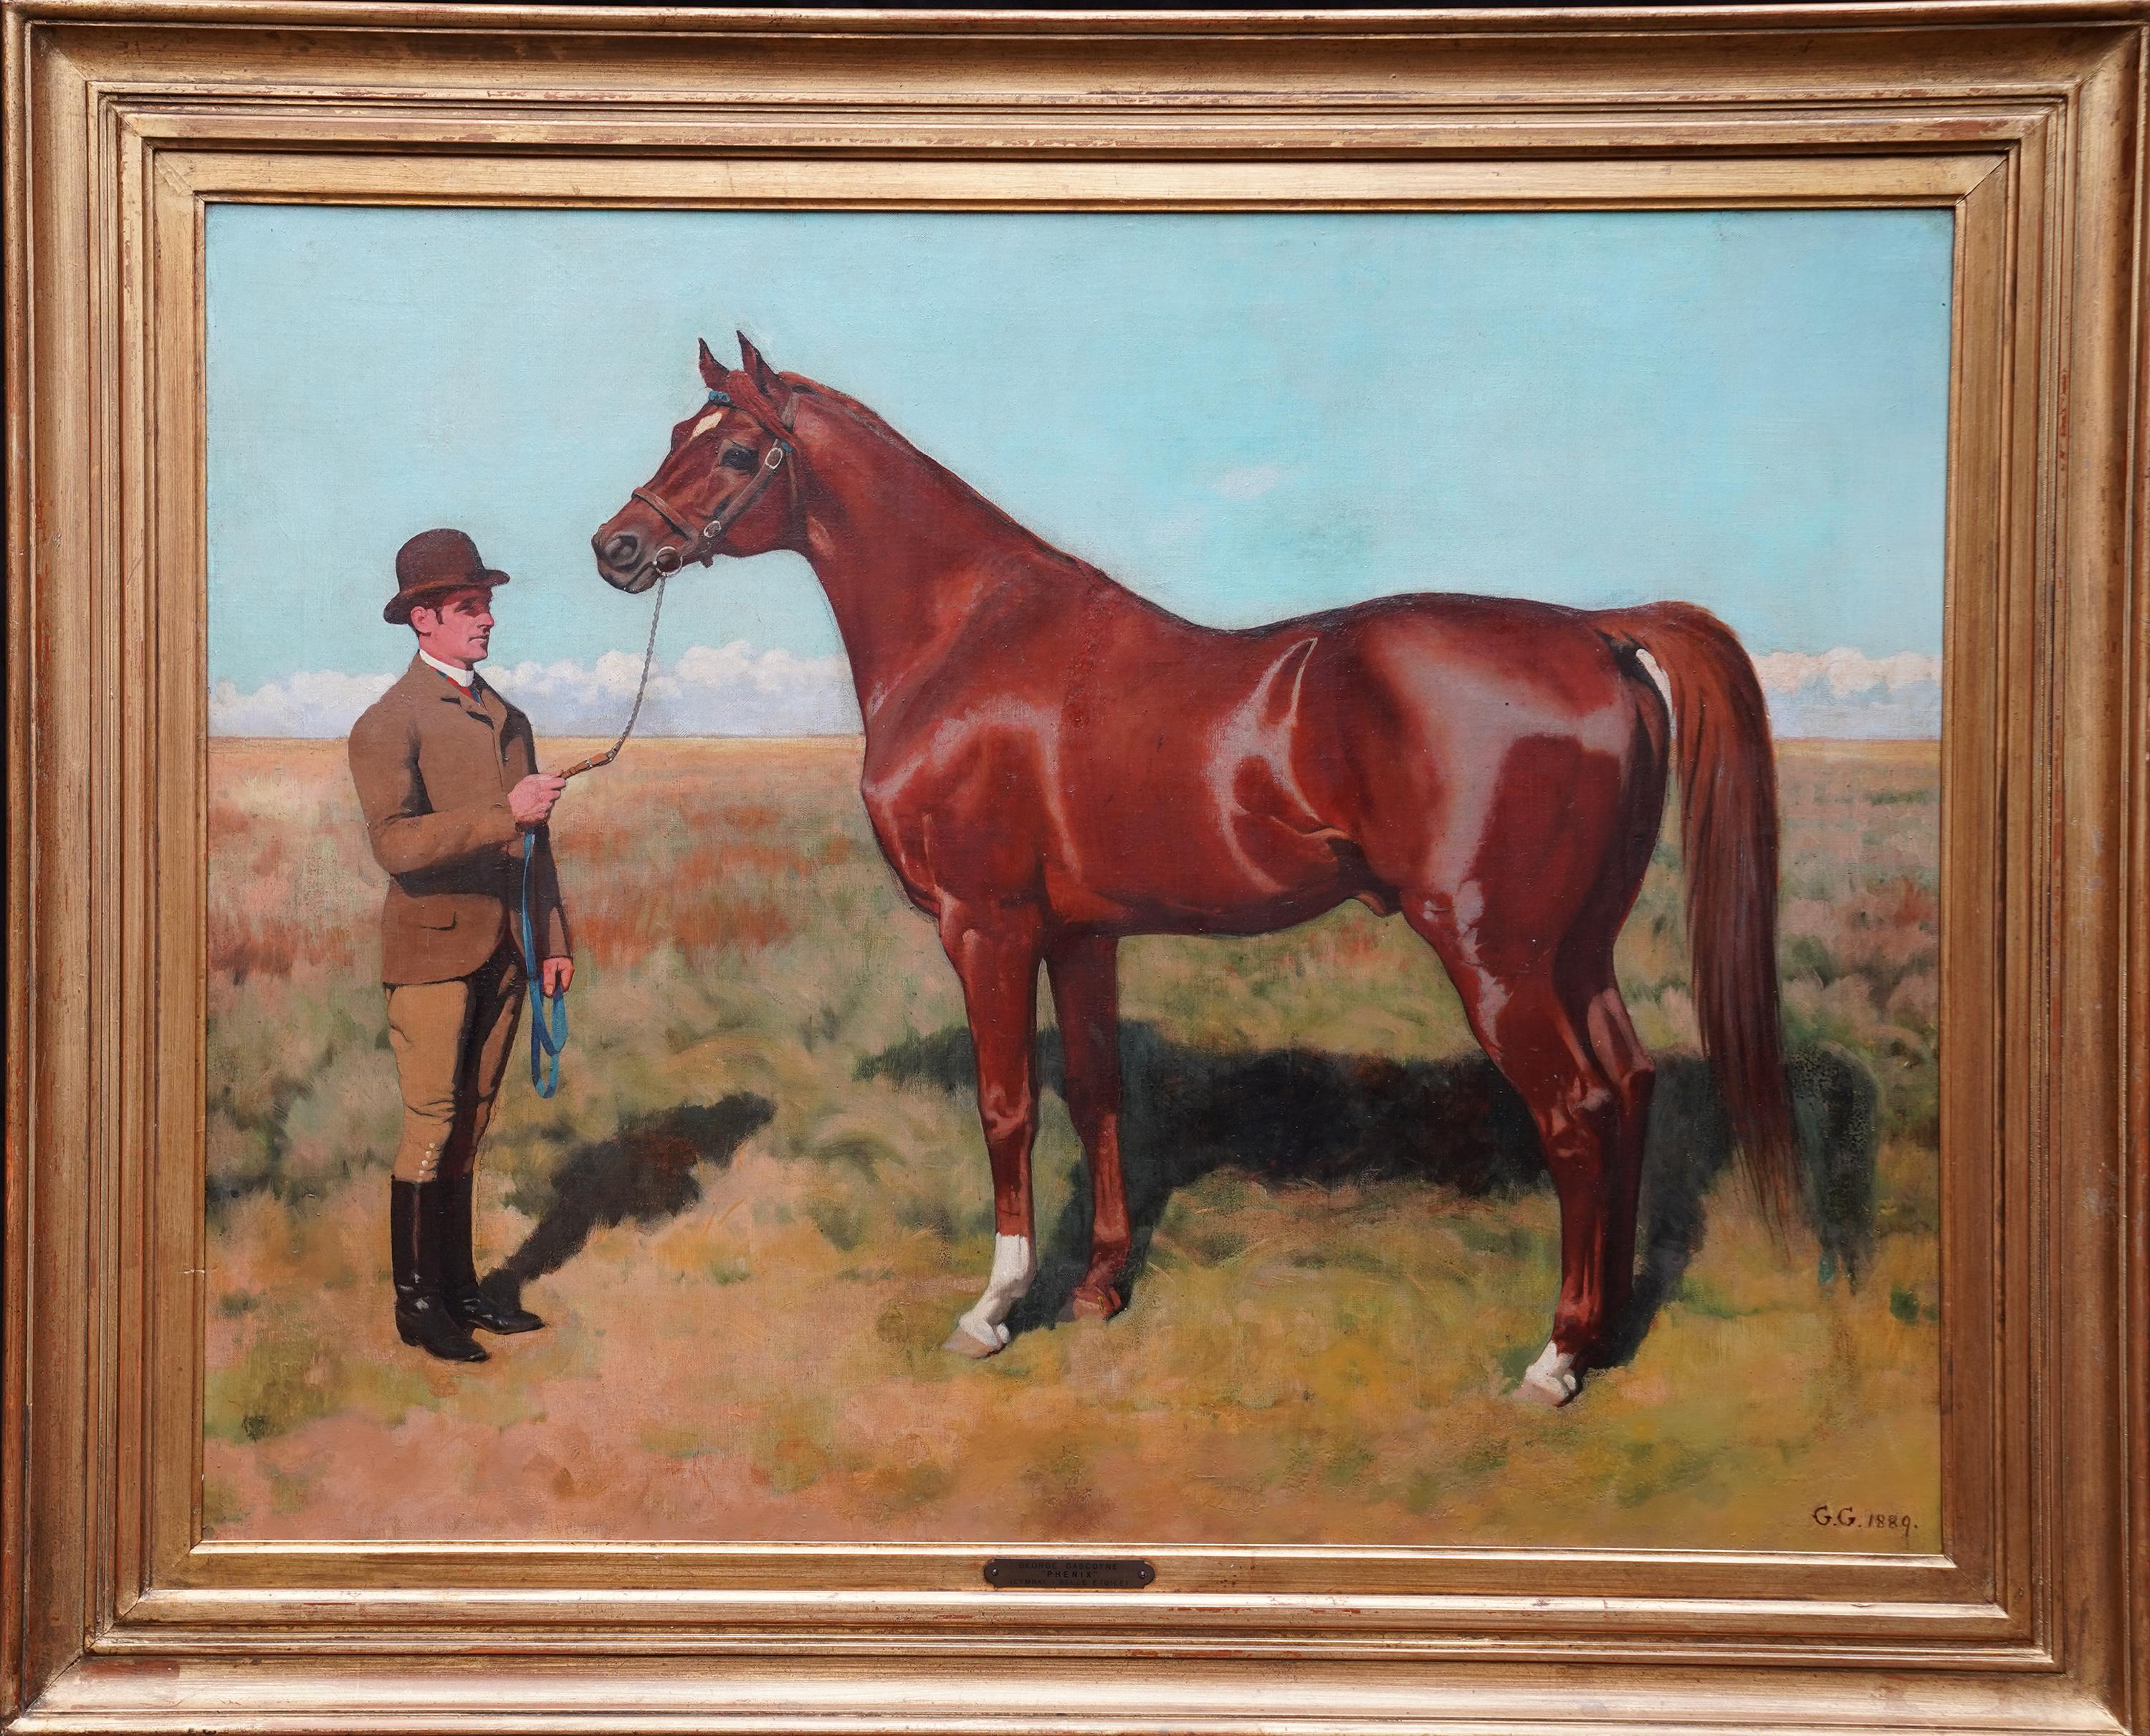 Portrait Painting George Gascoyne - Cheval de course Phoenix avec Guilermo Kemmis - peinture à l'huile britannique du 19e siècle